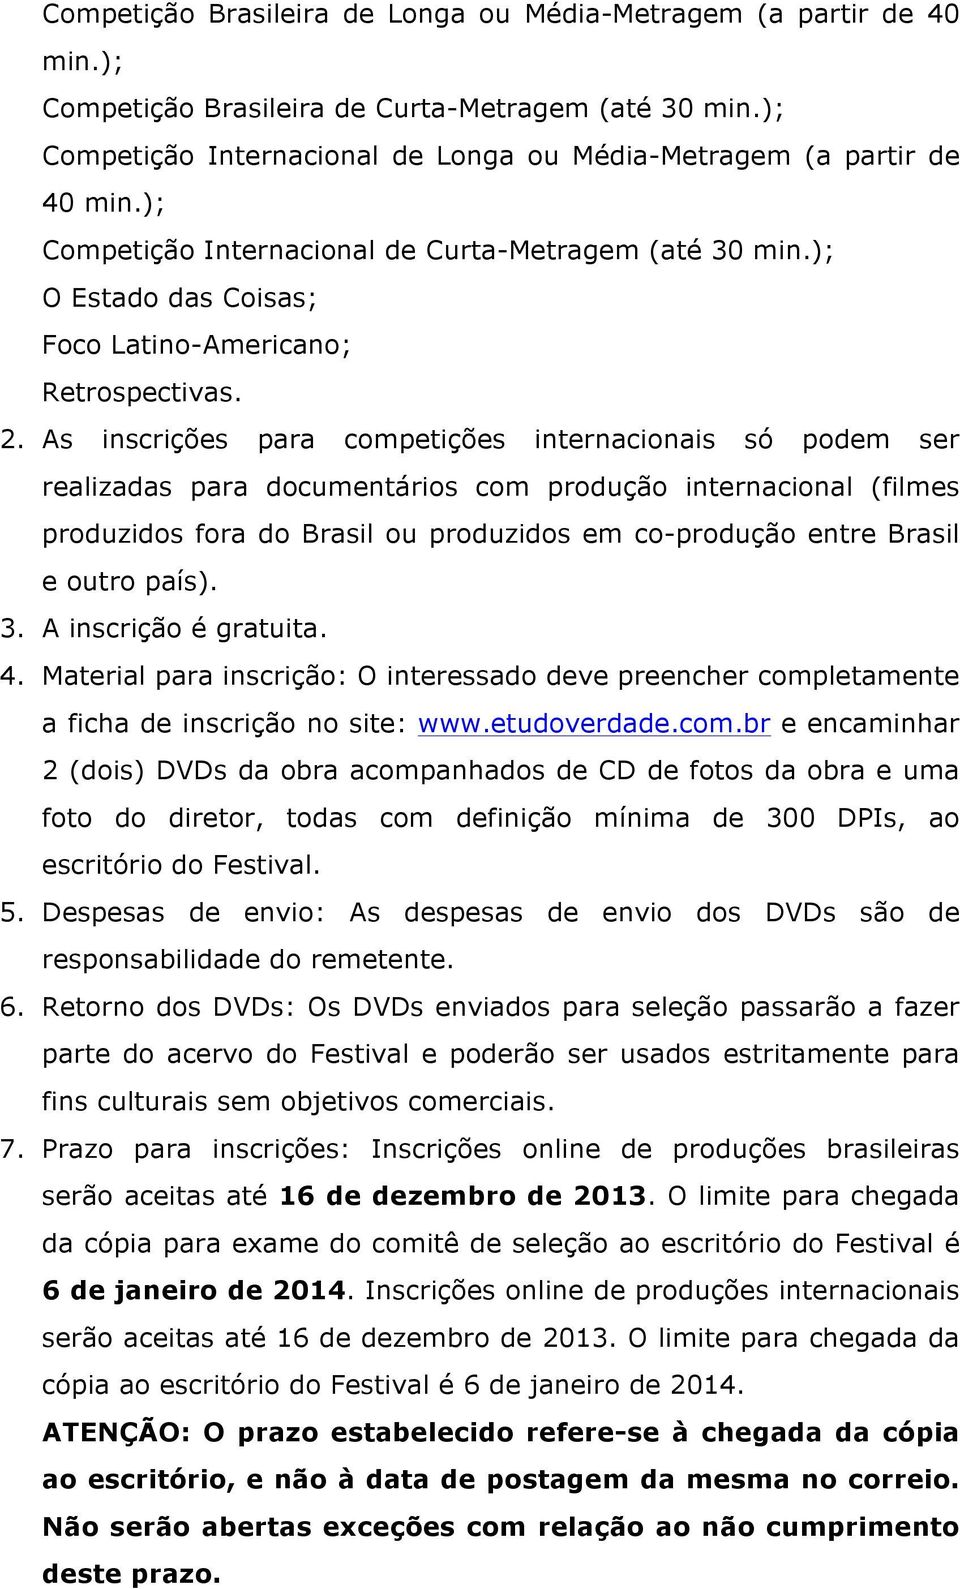 As inscrições para competições internacionais só podem ser realizadas para documentários com produção internacional (filmes produzidos fora do Brasil ou produzidos em co-produção entre Brasil e outro